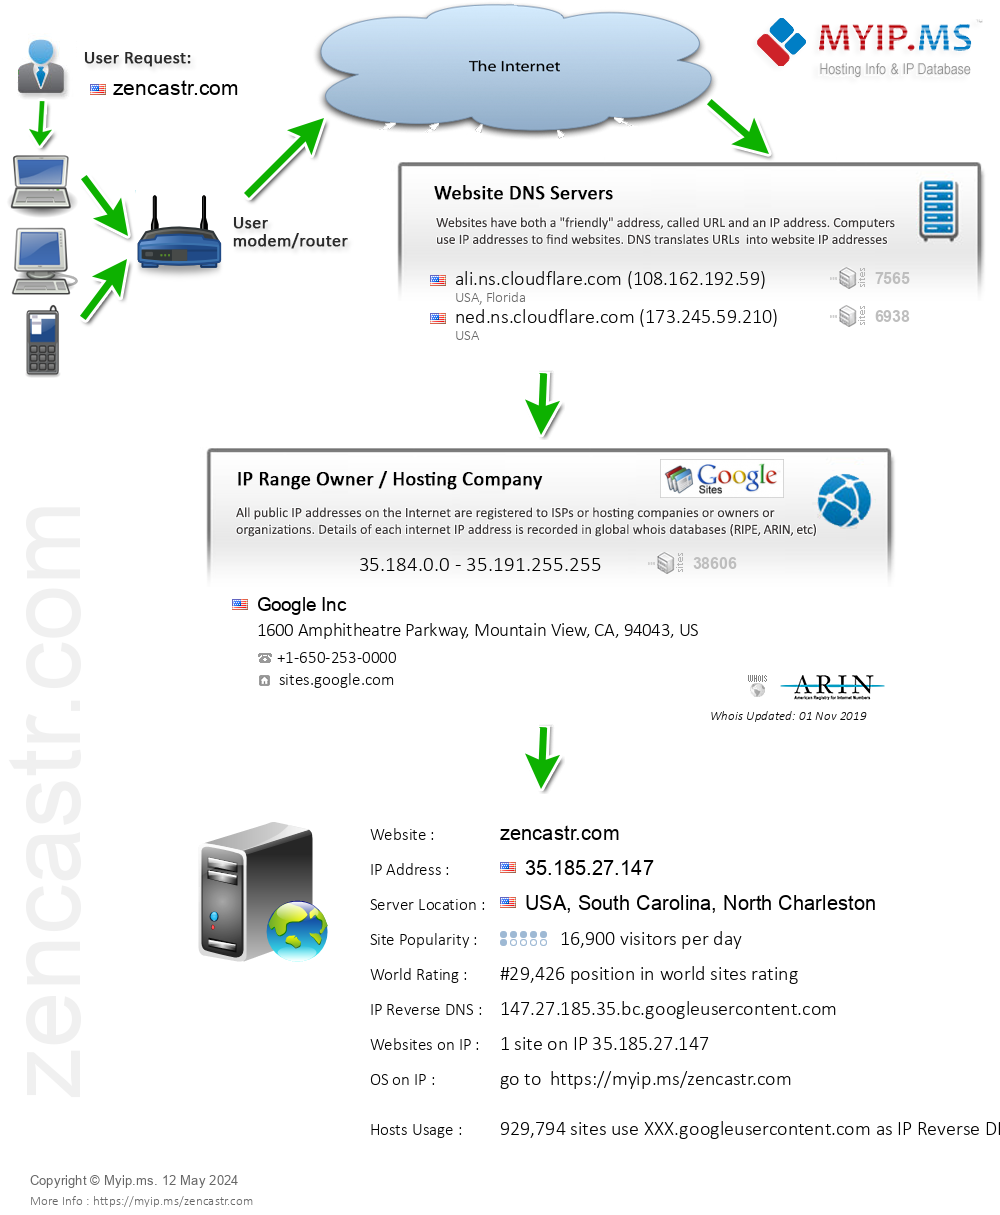 Zencastr.com - Website Hosting Visual IP Diagram